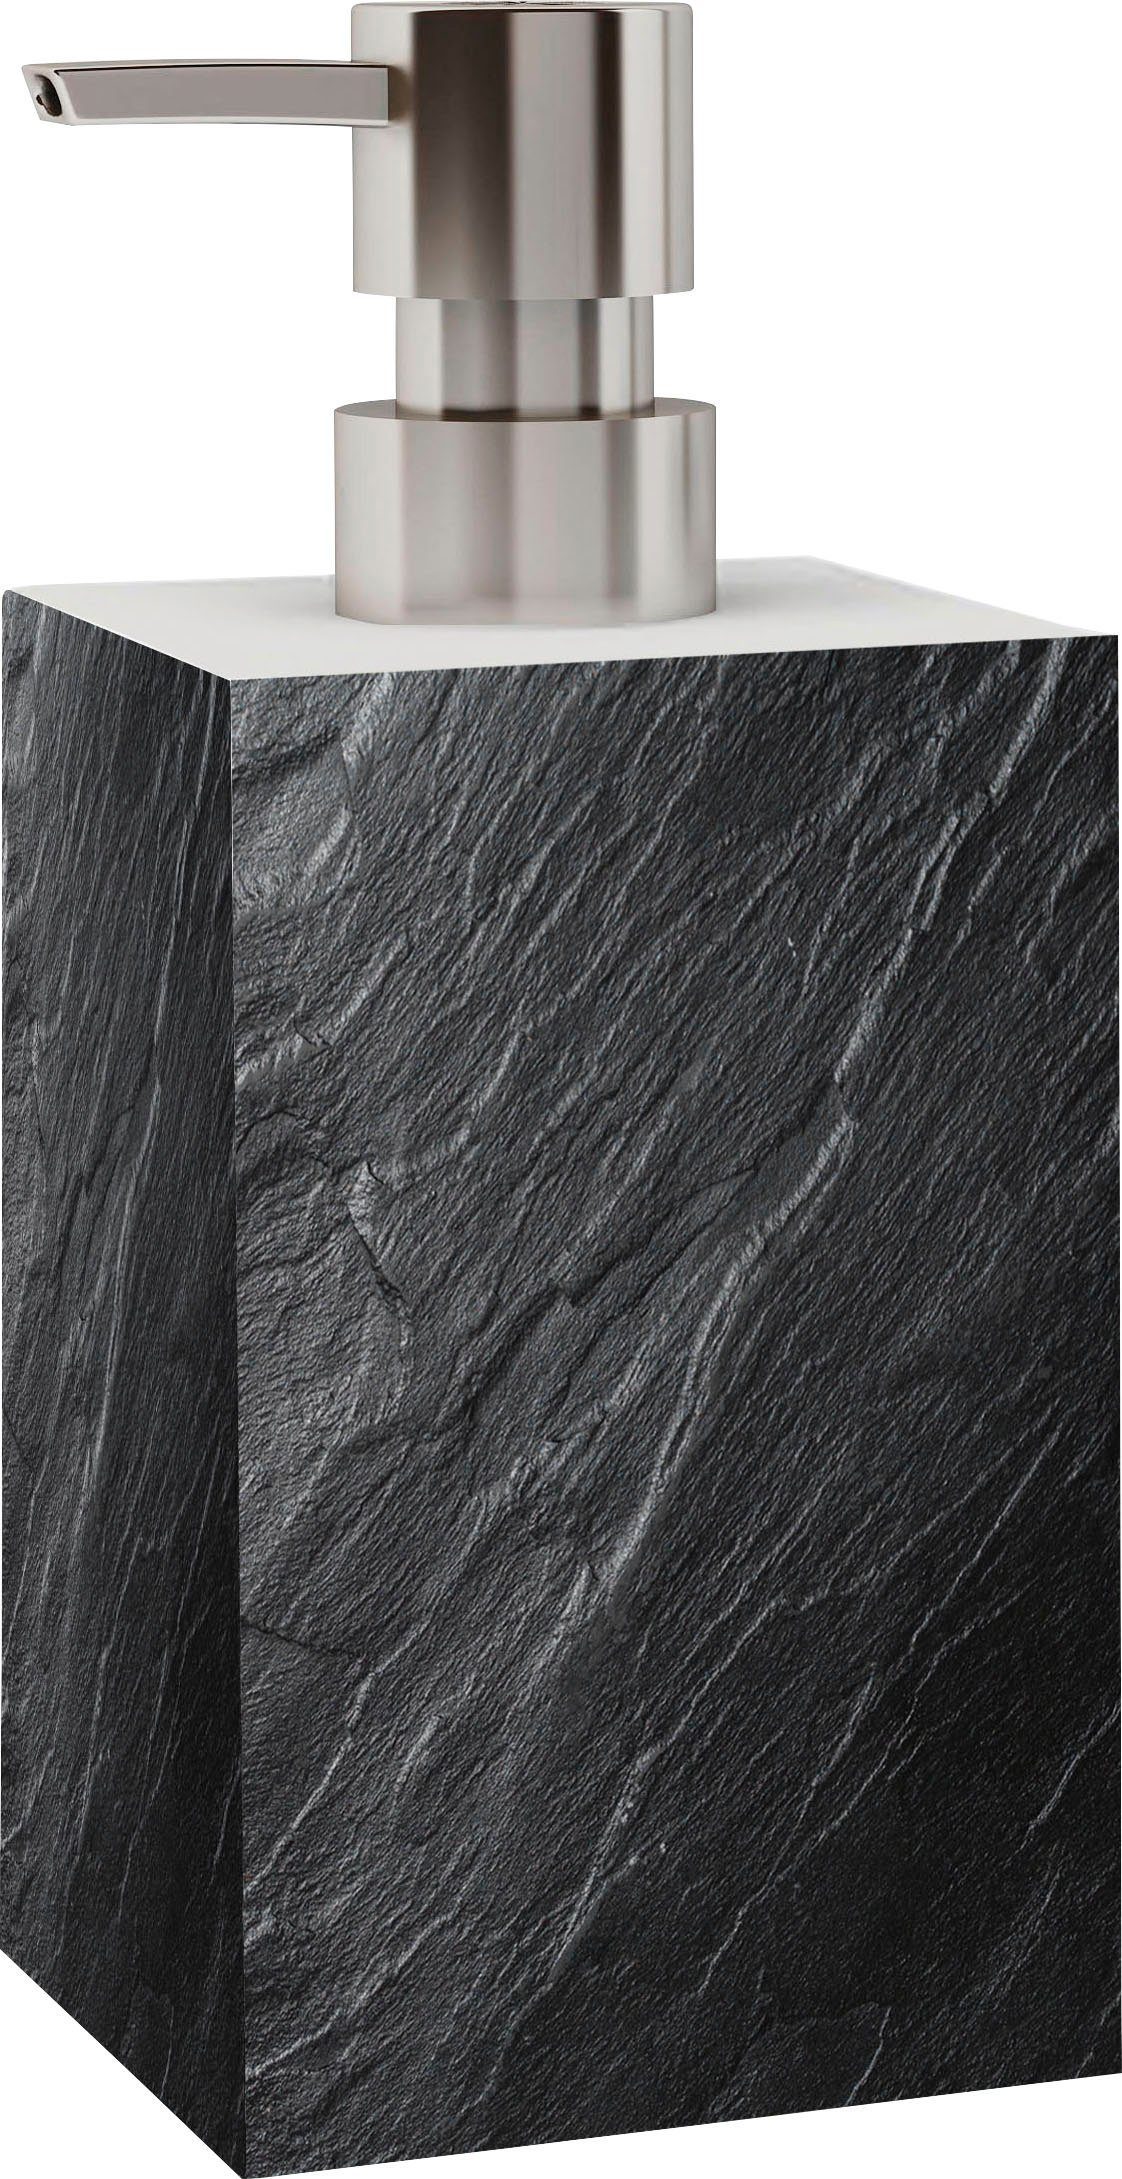 Sanilo Seifenspender Granit, leicht nachfüllbar